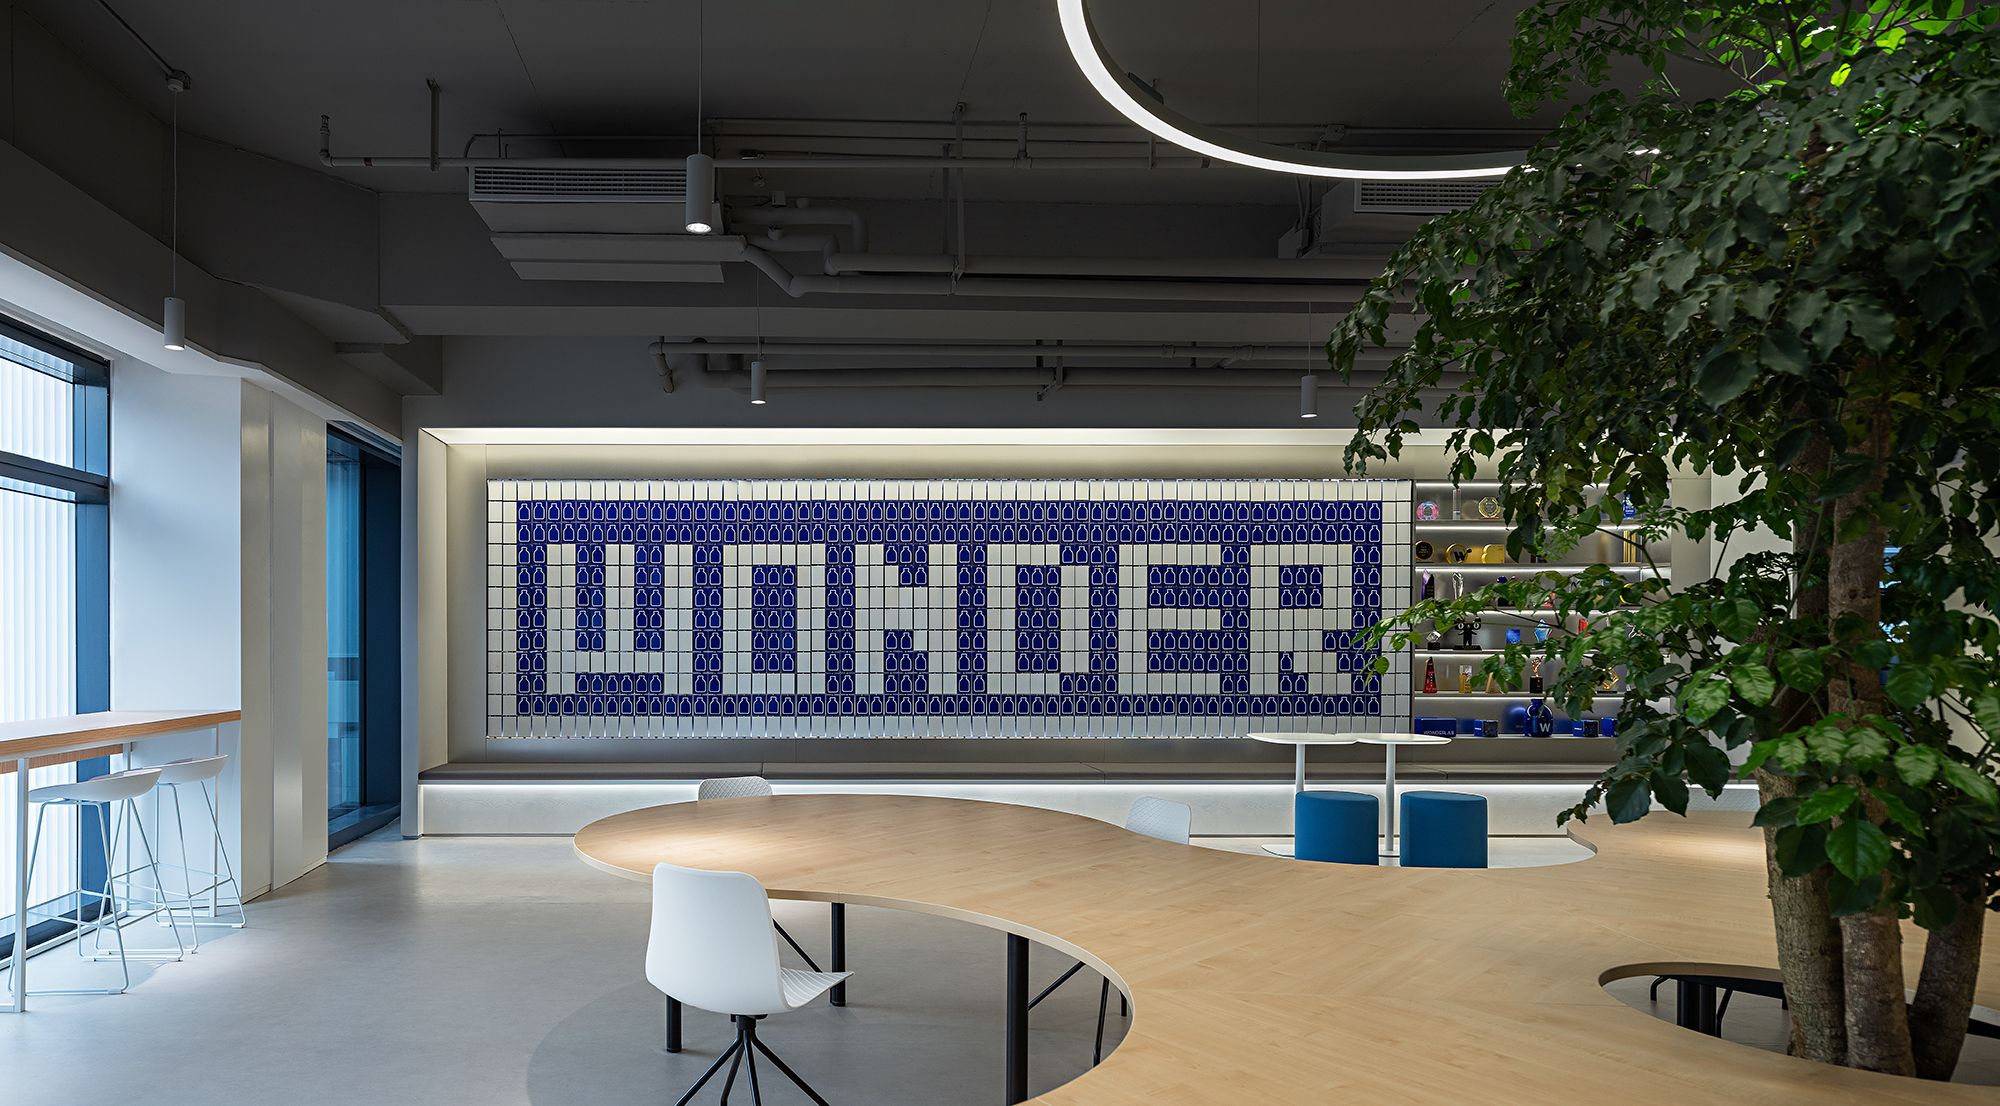 图片[4]|Wonderlab办公室-深圳|ART-Arrakis | 建筑室内设计的创新与灵感